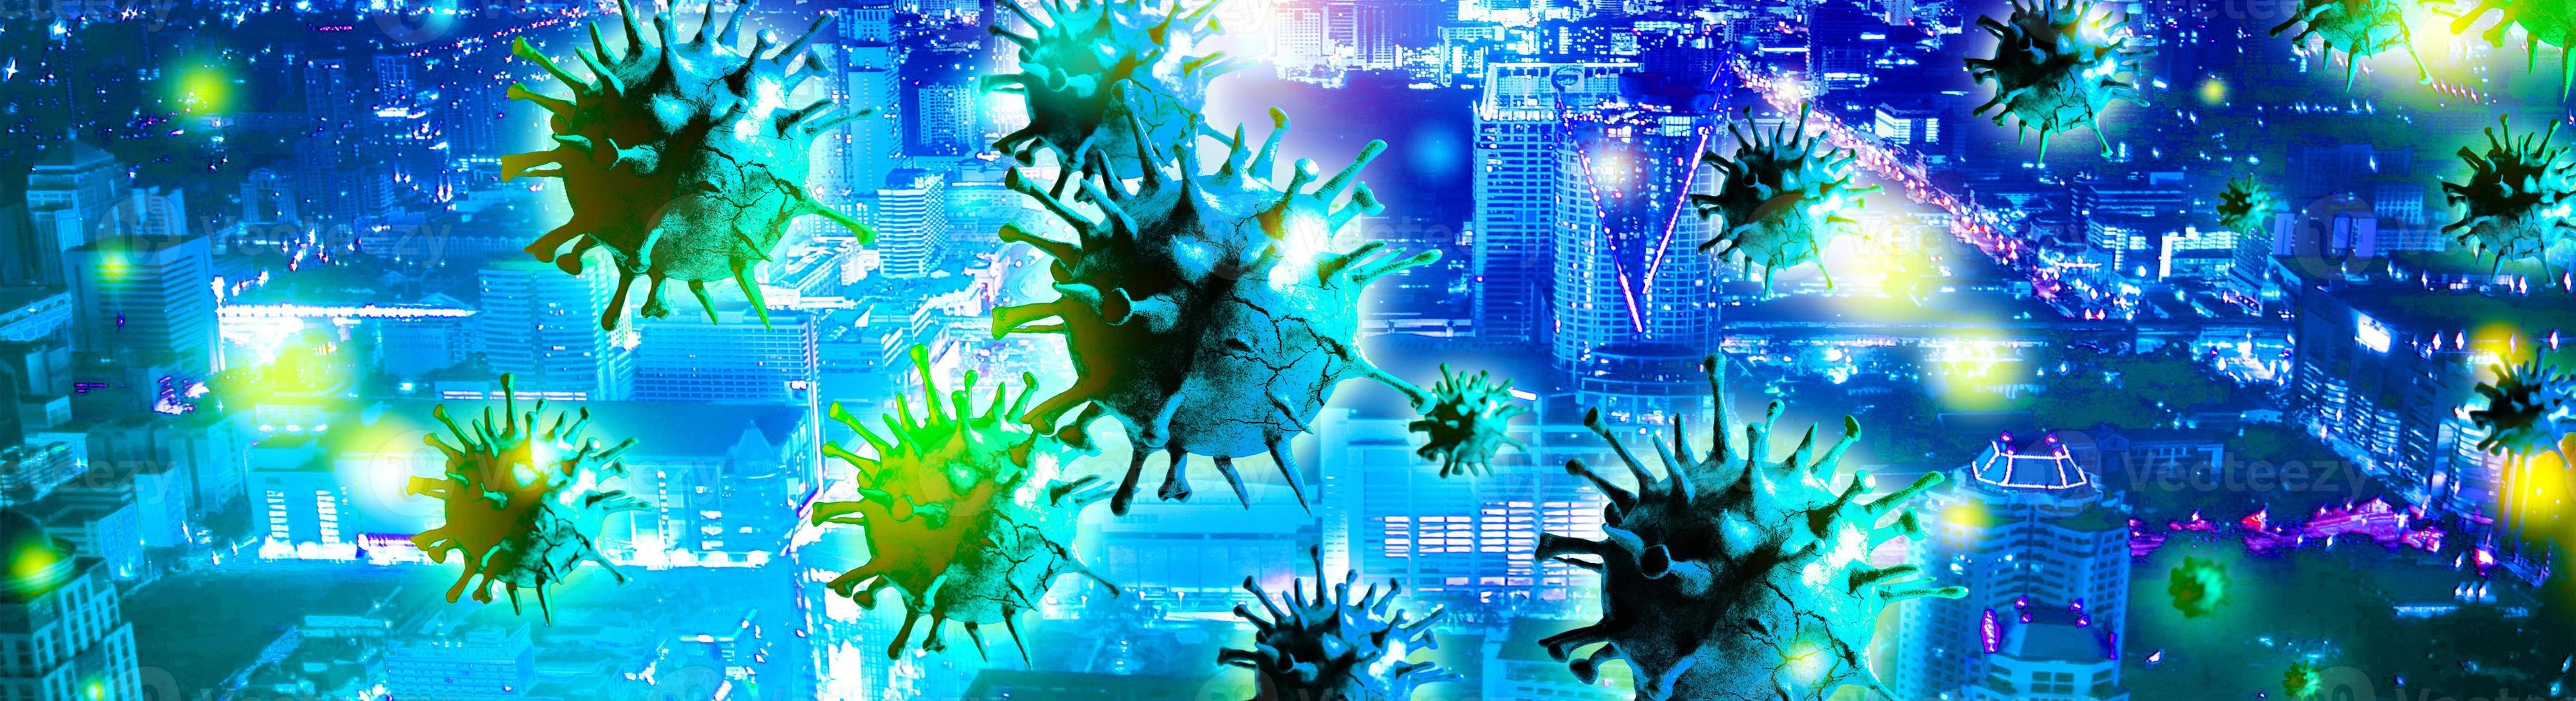 hintergrund des corona-virus, pandemierisikokonzept. 3D-Darstellung foto